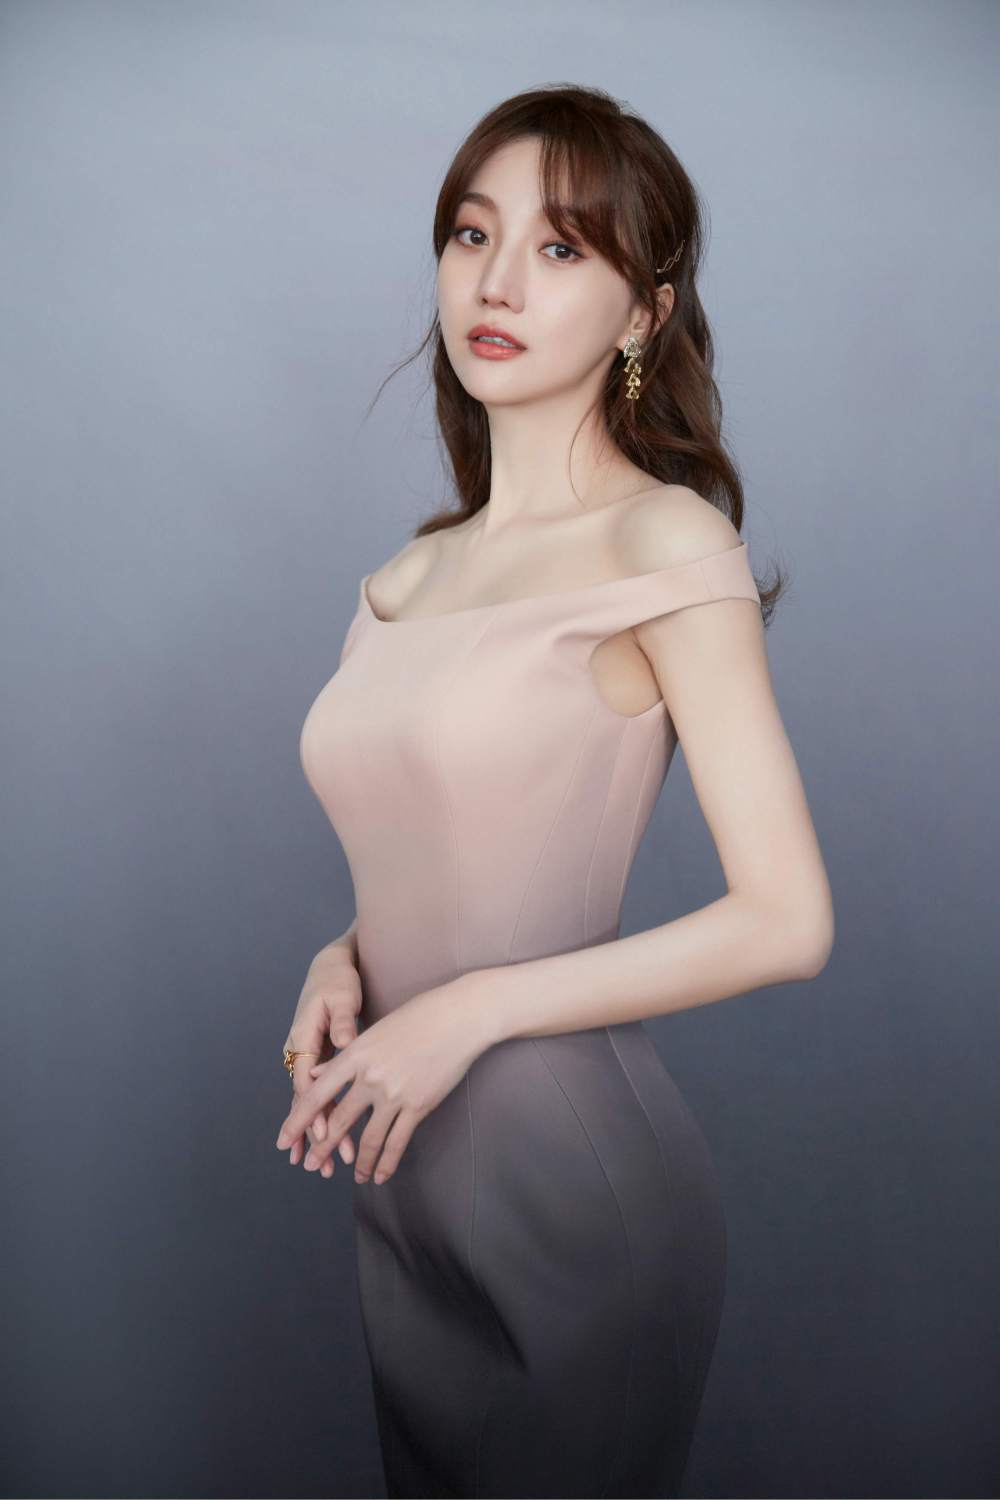 Yawen Zheng Sexy and Hottest Photos , Latest Pics